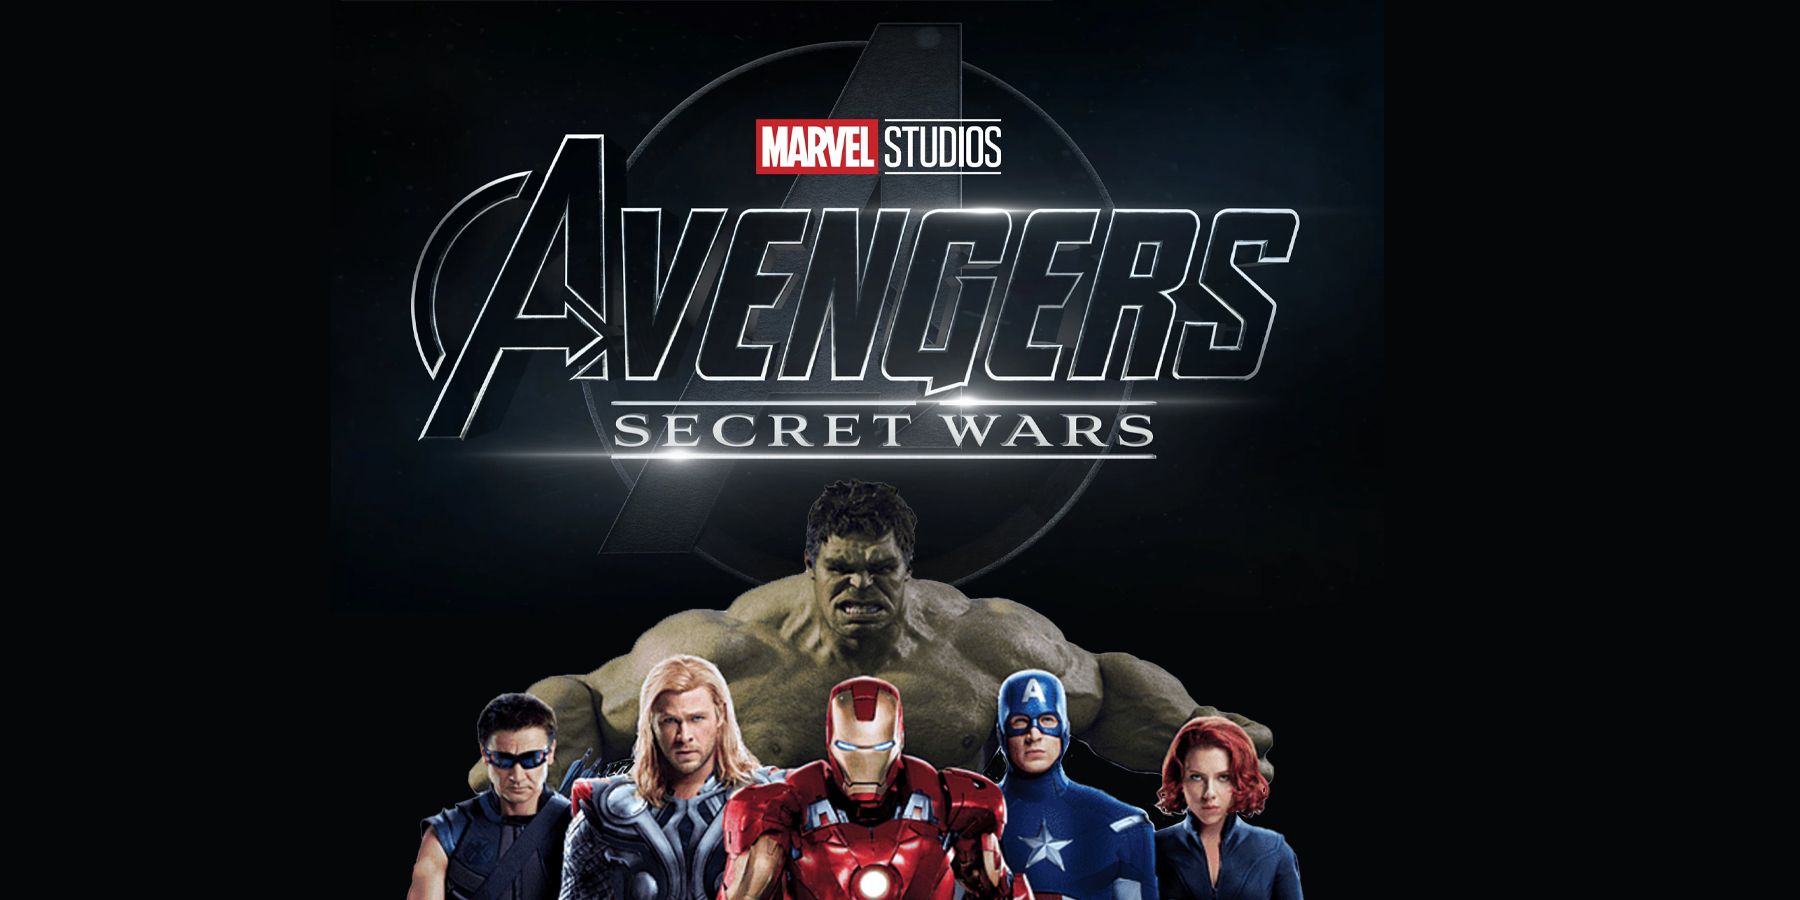 Avengers Secret Wars Cast Captain America Chris Evans